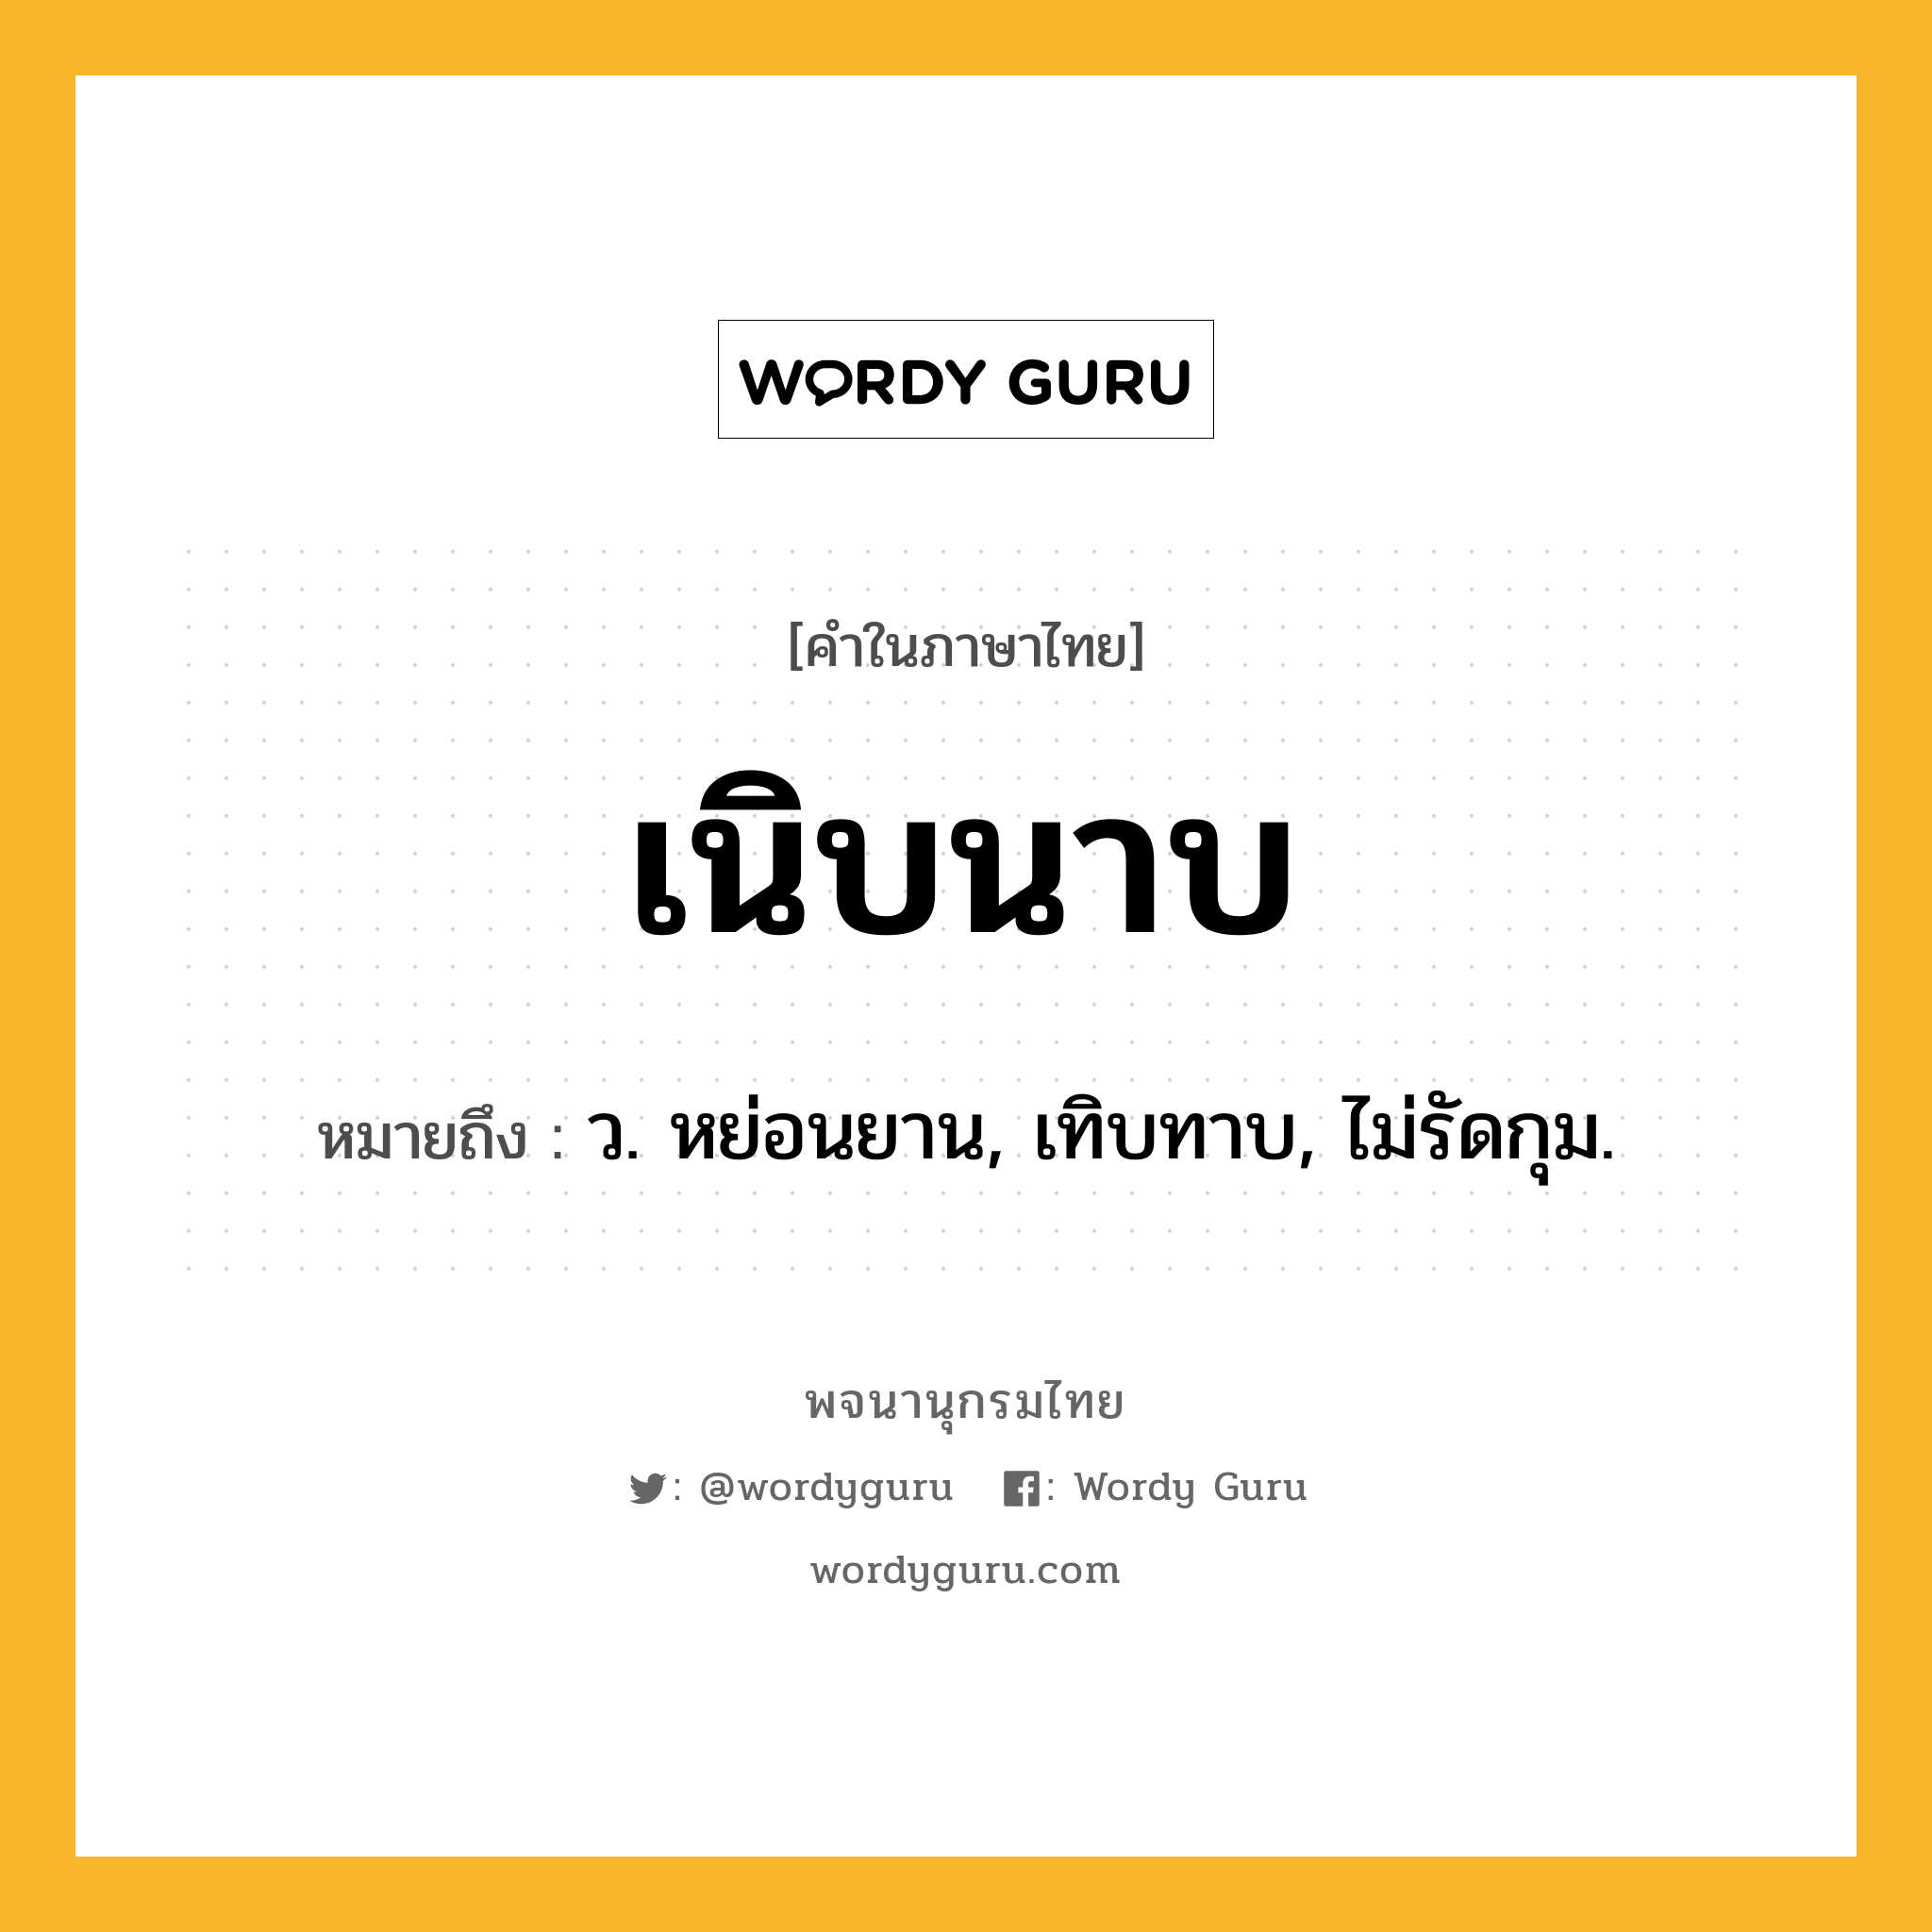 เนิบนาบ ความหมาย หมายถึงอะไร?, คำในภาษาไทย เนิบนาบ หมายถึง ว. หย่อนยาน, เทิบทาบ, ไม่รัดกุม.